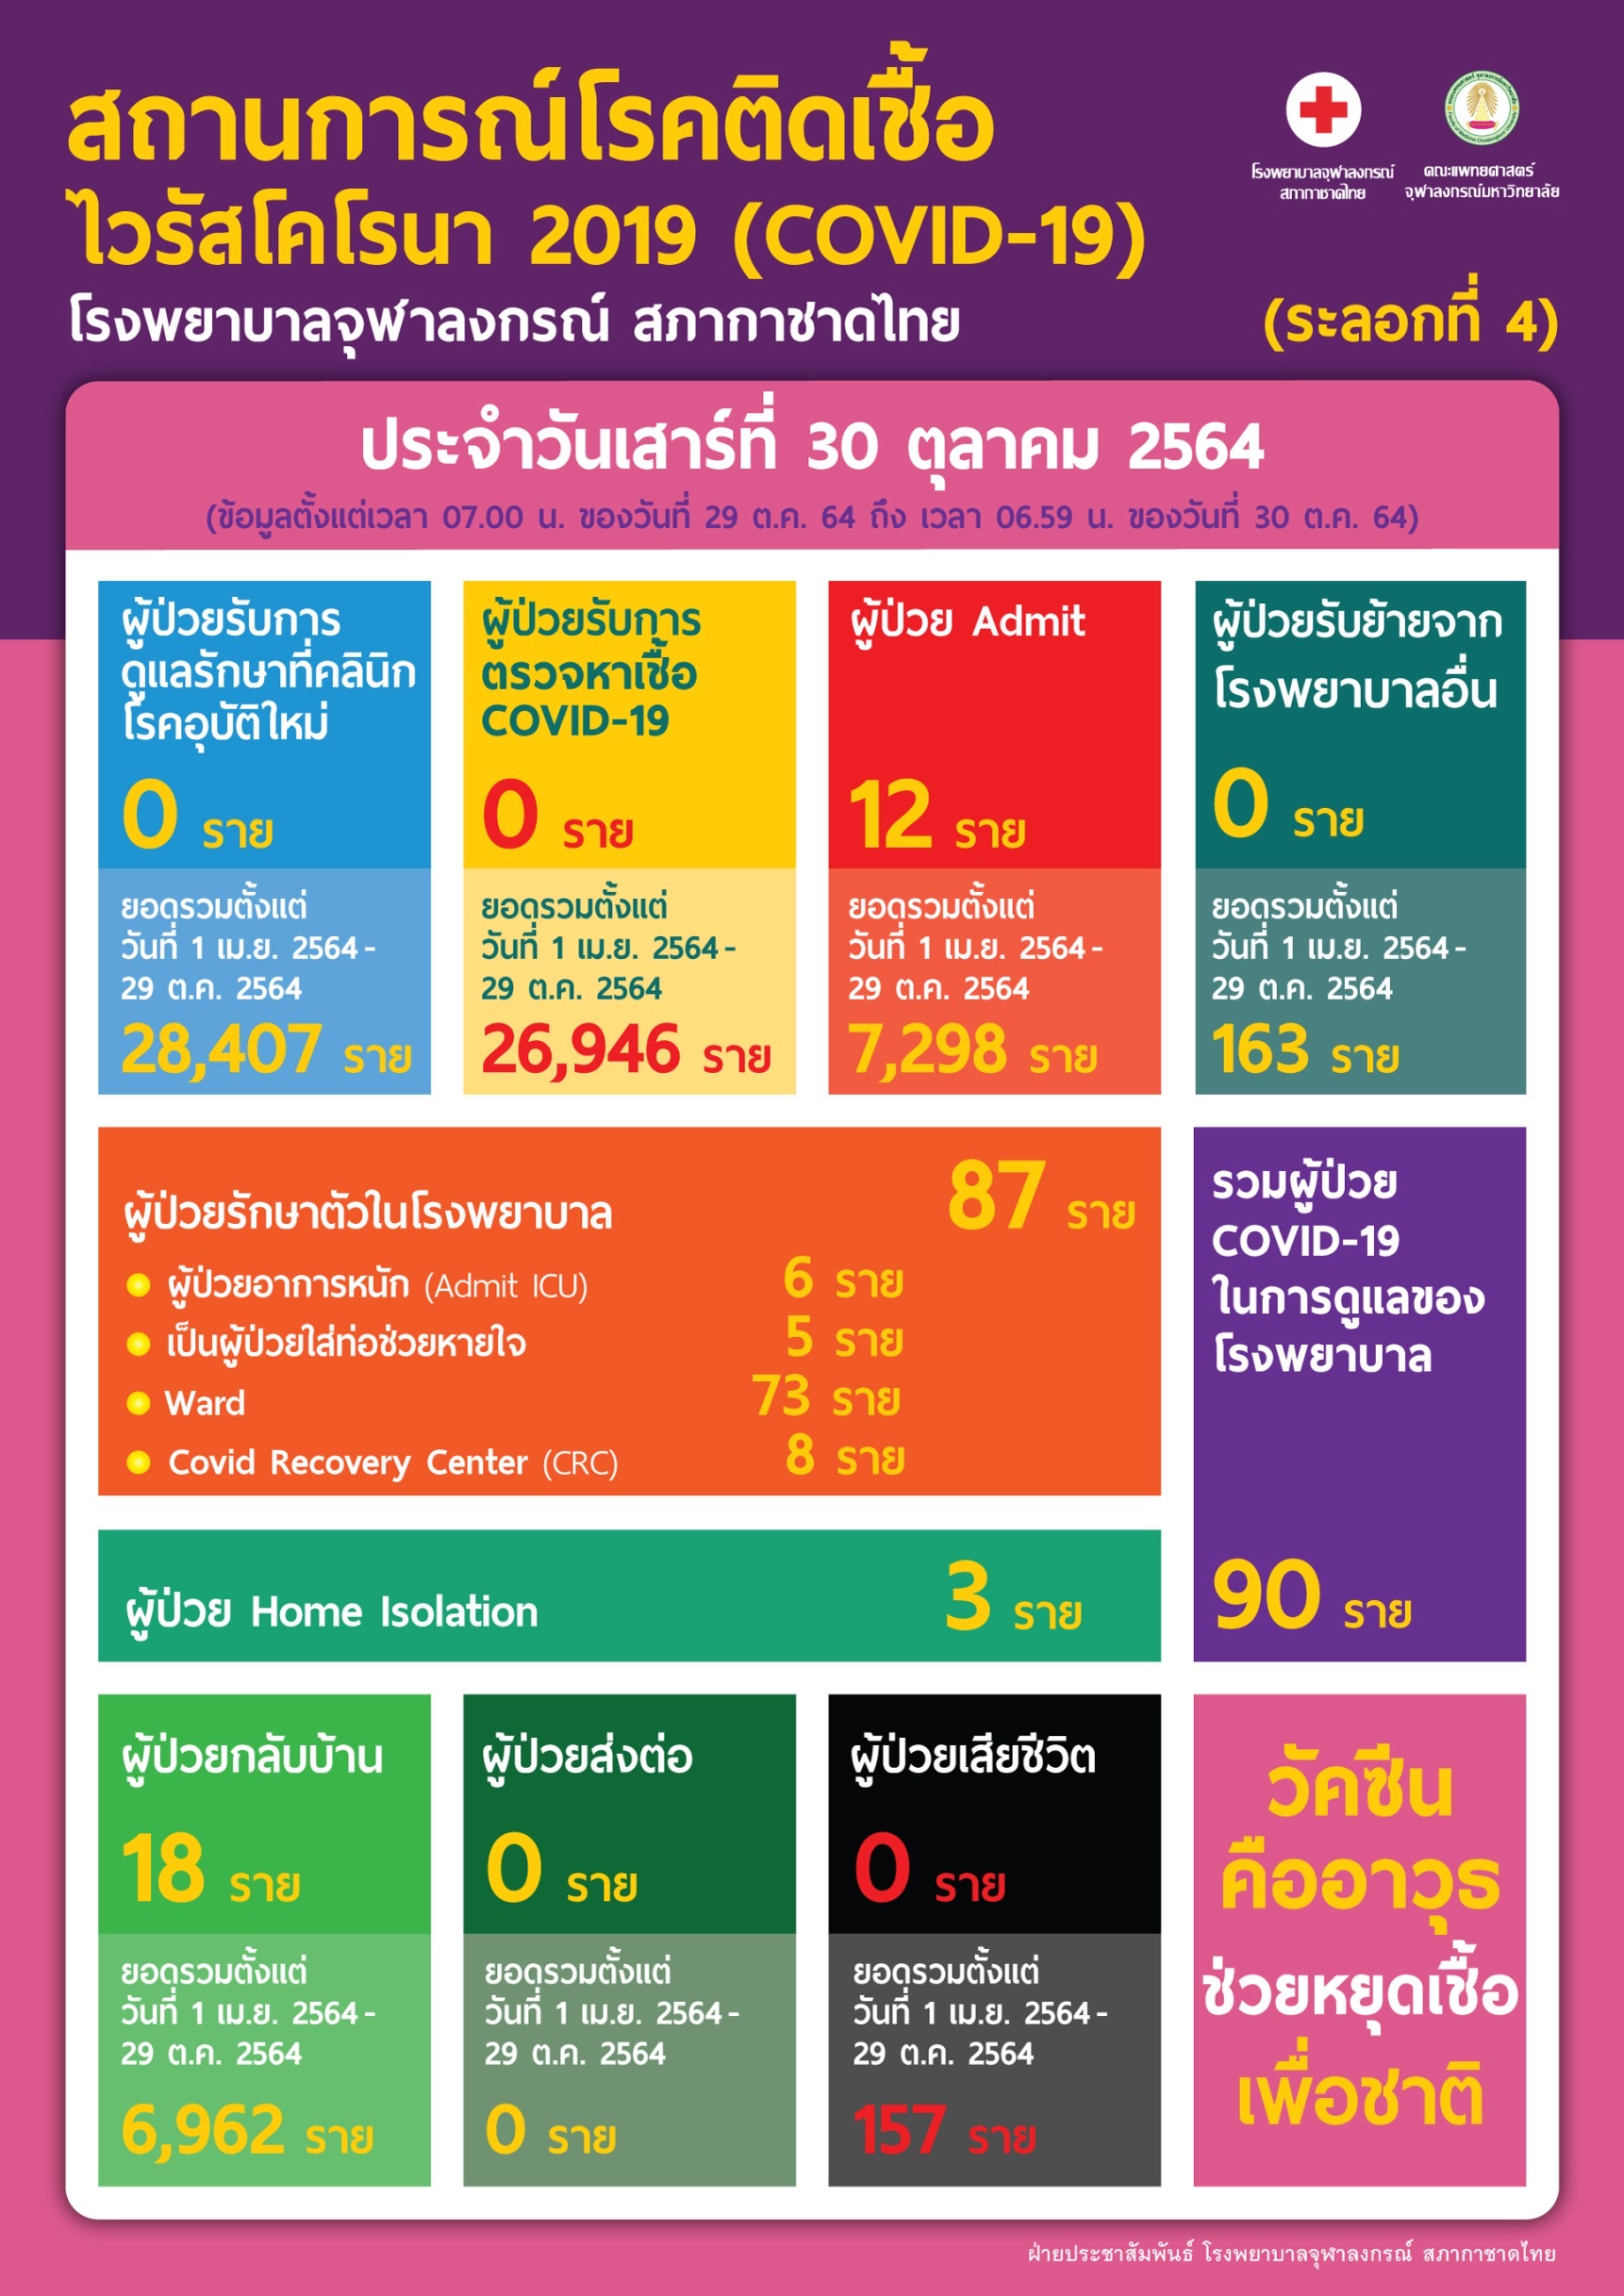 สถานการณ์โรคติดเชื้อไวรัสโคโรนา 2019 (COVID-19) (ระลอกที่ 4) โรงพยาบาลจุฬาลงกรณ์ สภากาชาดไทย ประจำวันเสาร์ที่ 30 ตุลาคม 2564